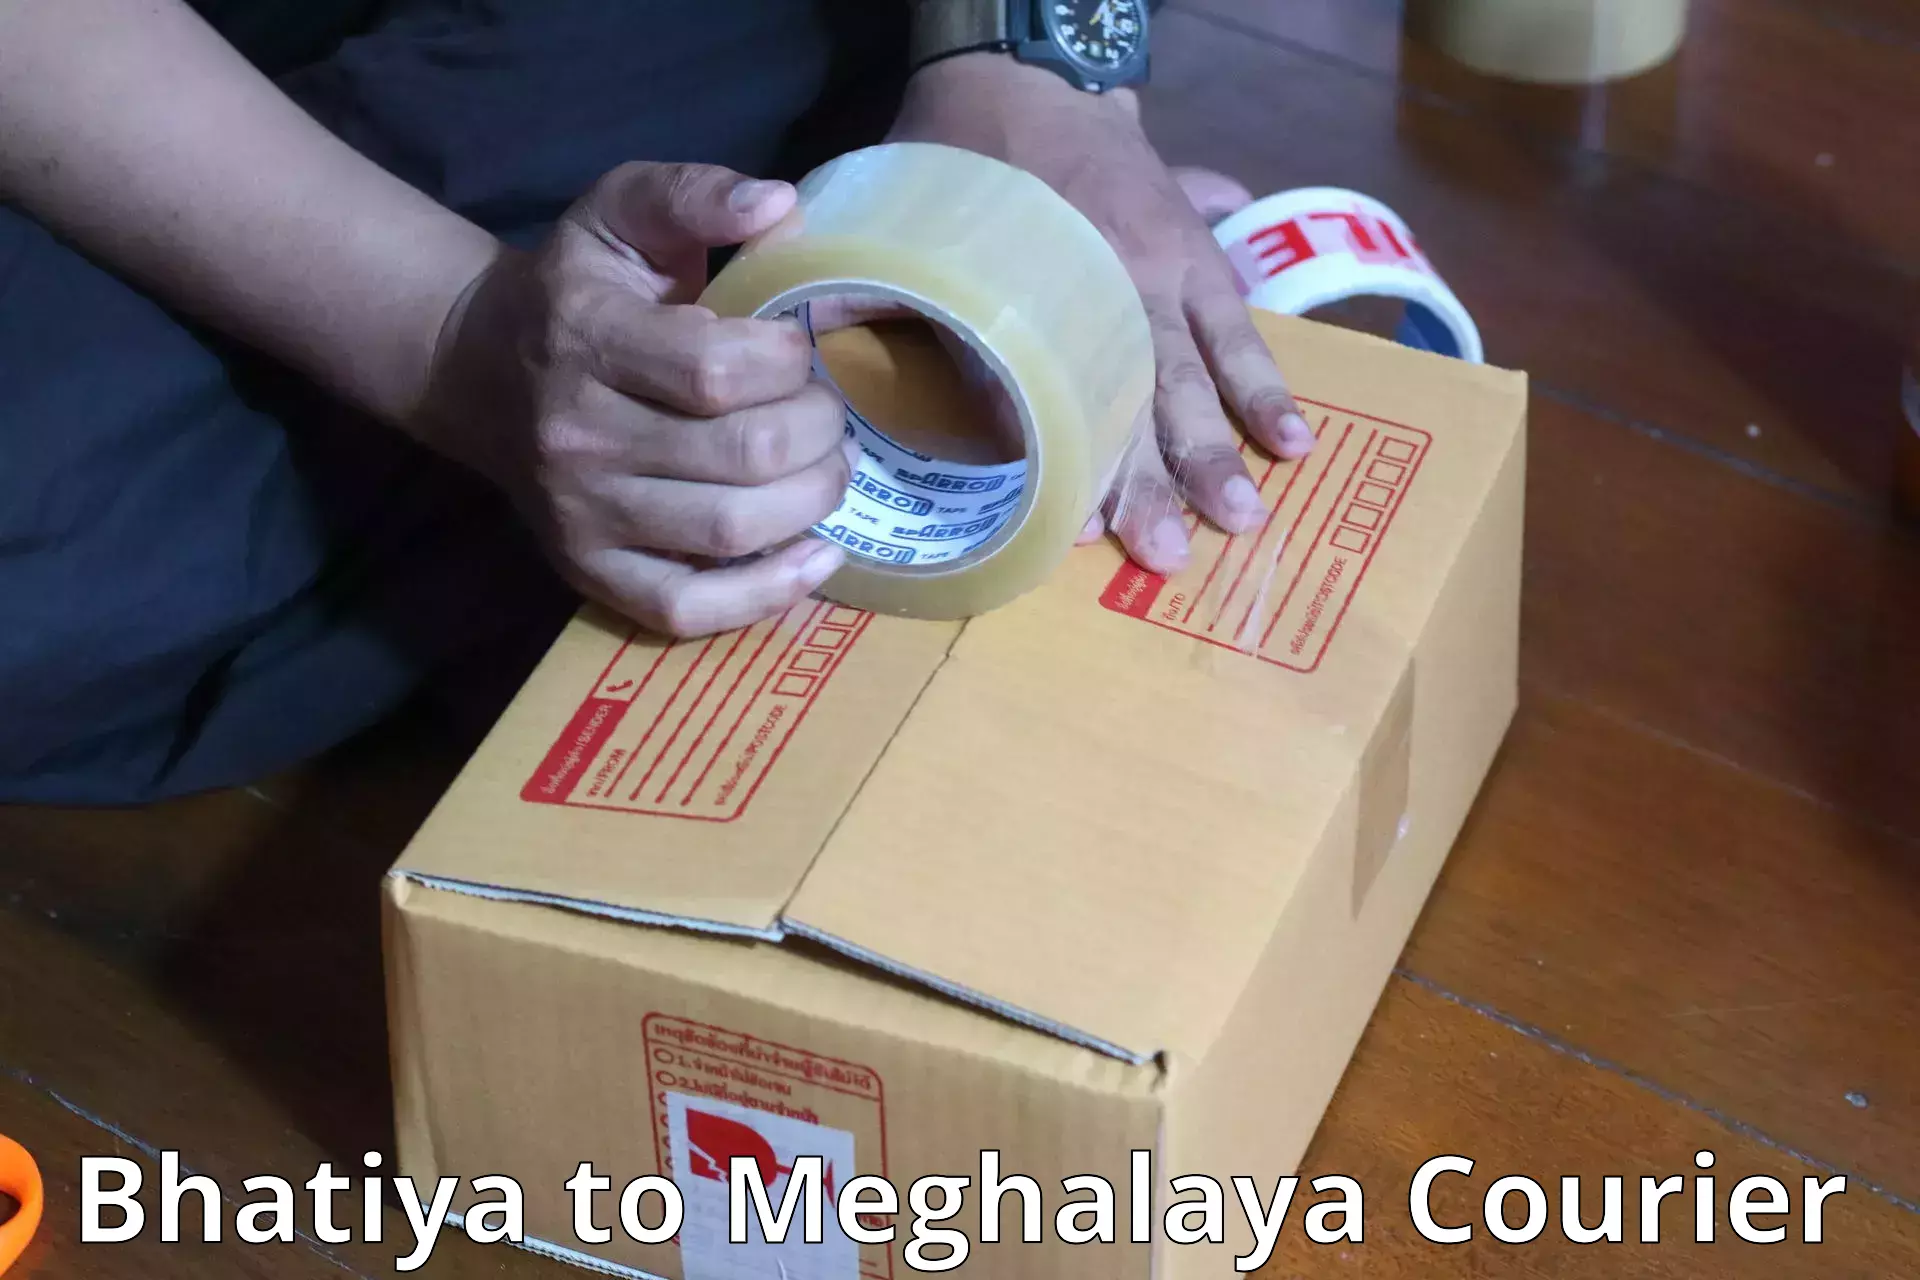 Luggage shipment tracking Bhatiya to Shillong